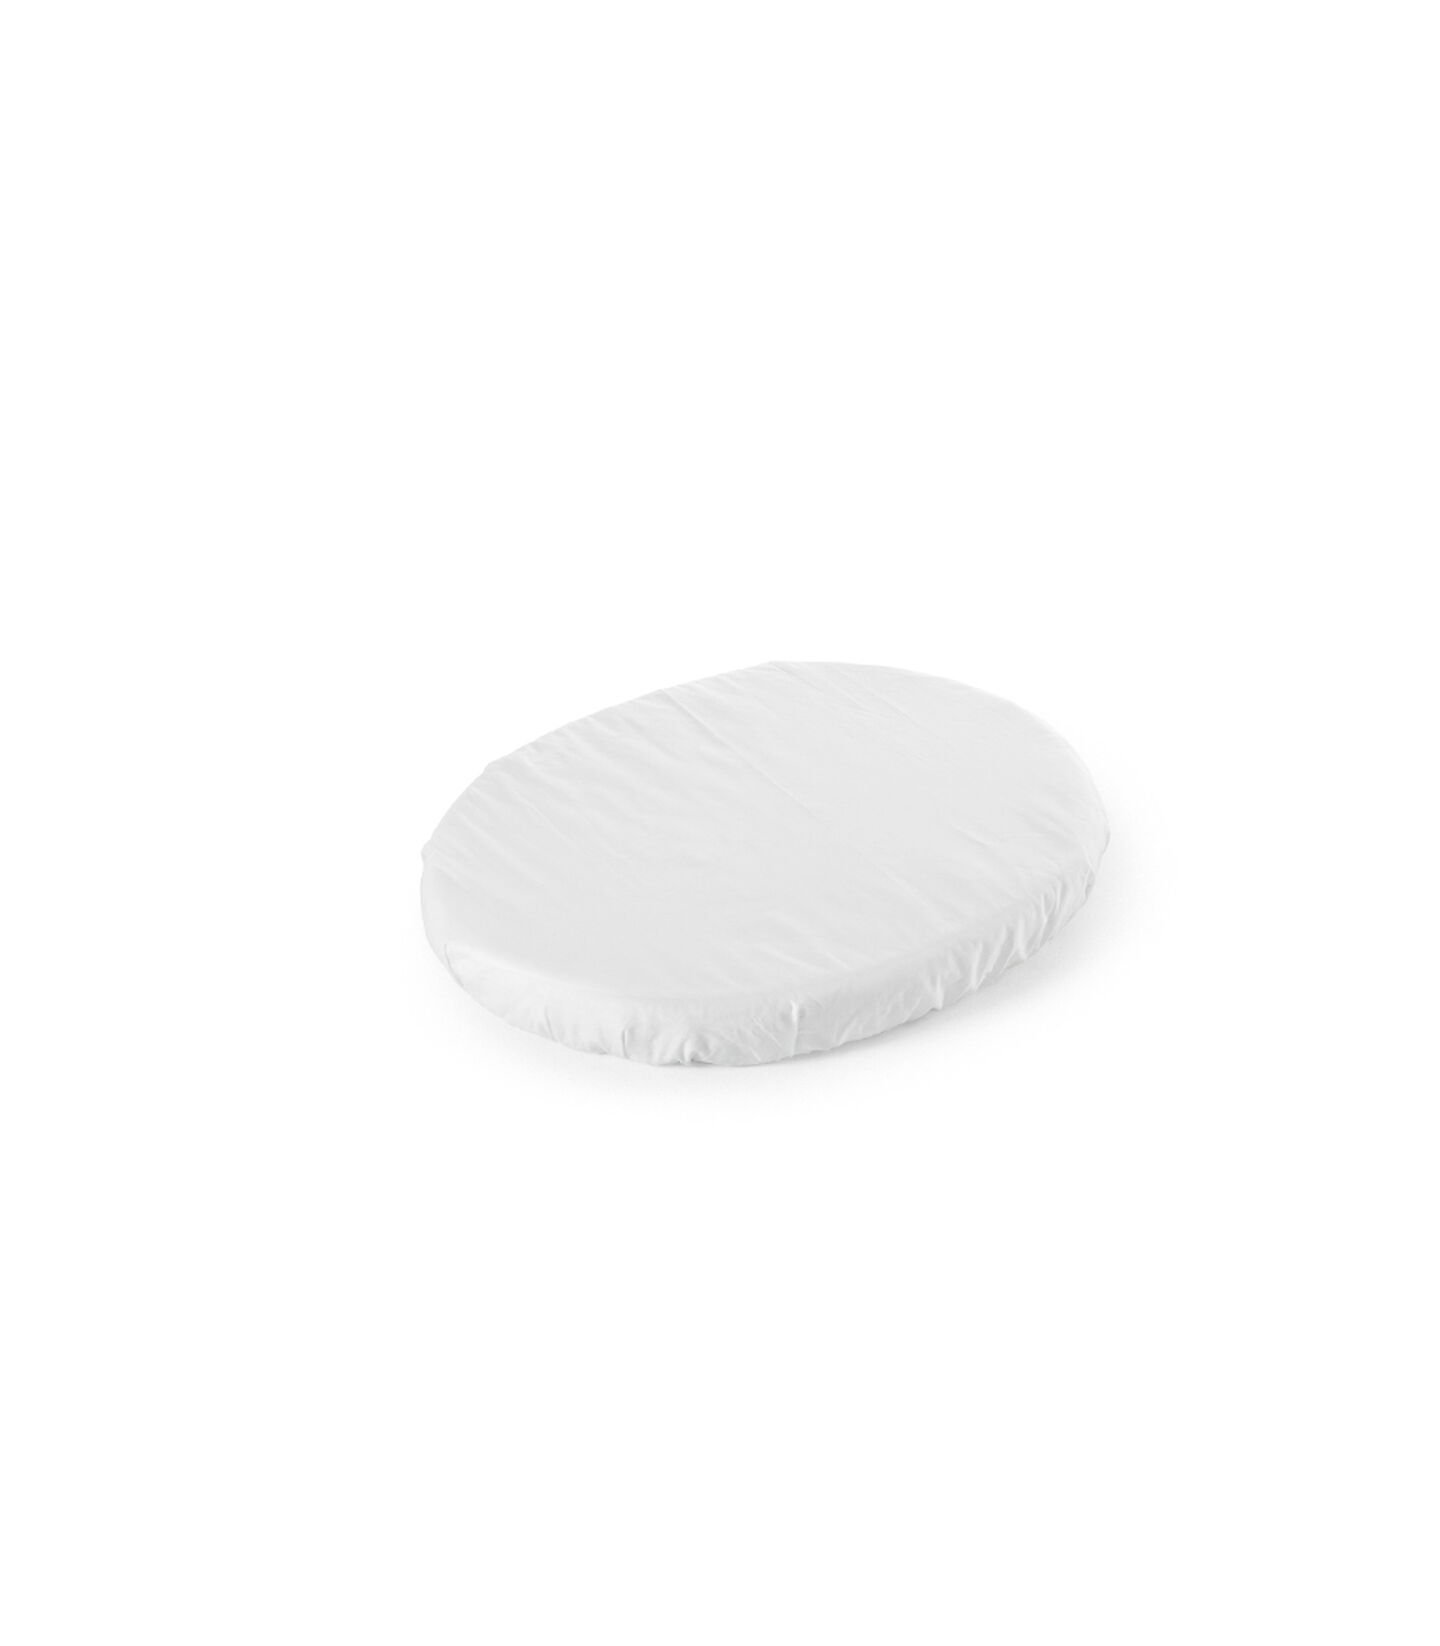 Stokke® Sleepi™ Beyaz Mini Fitted Çarşaf, Beyaz, mainview view 1